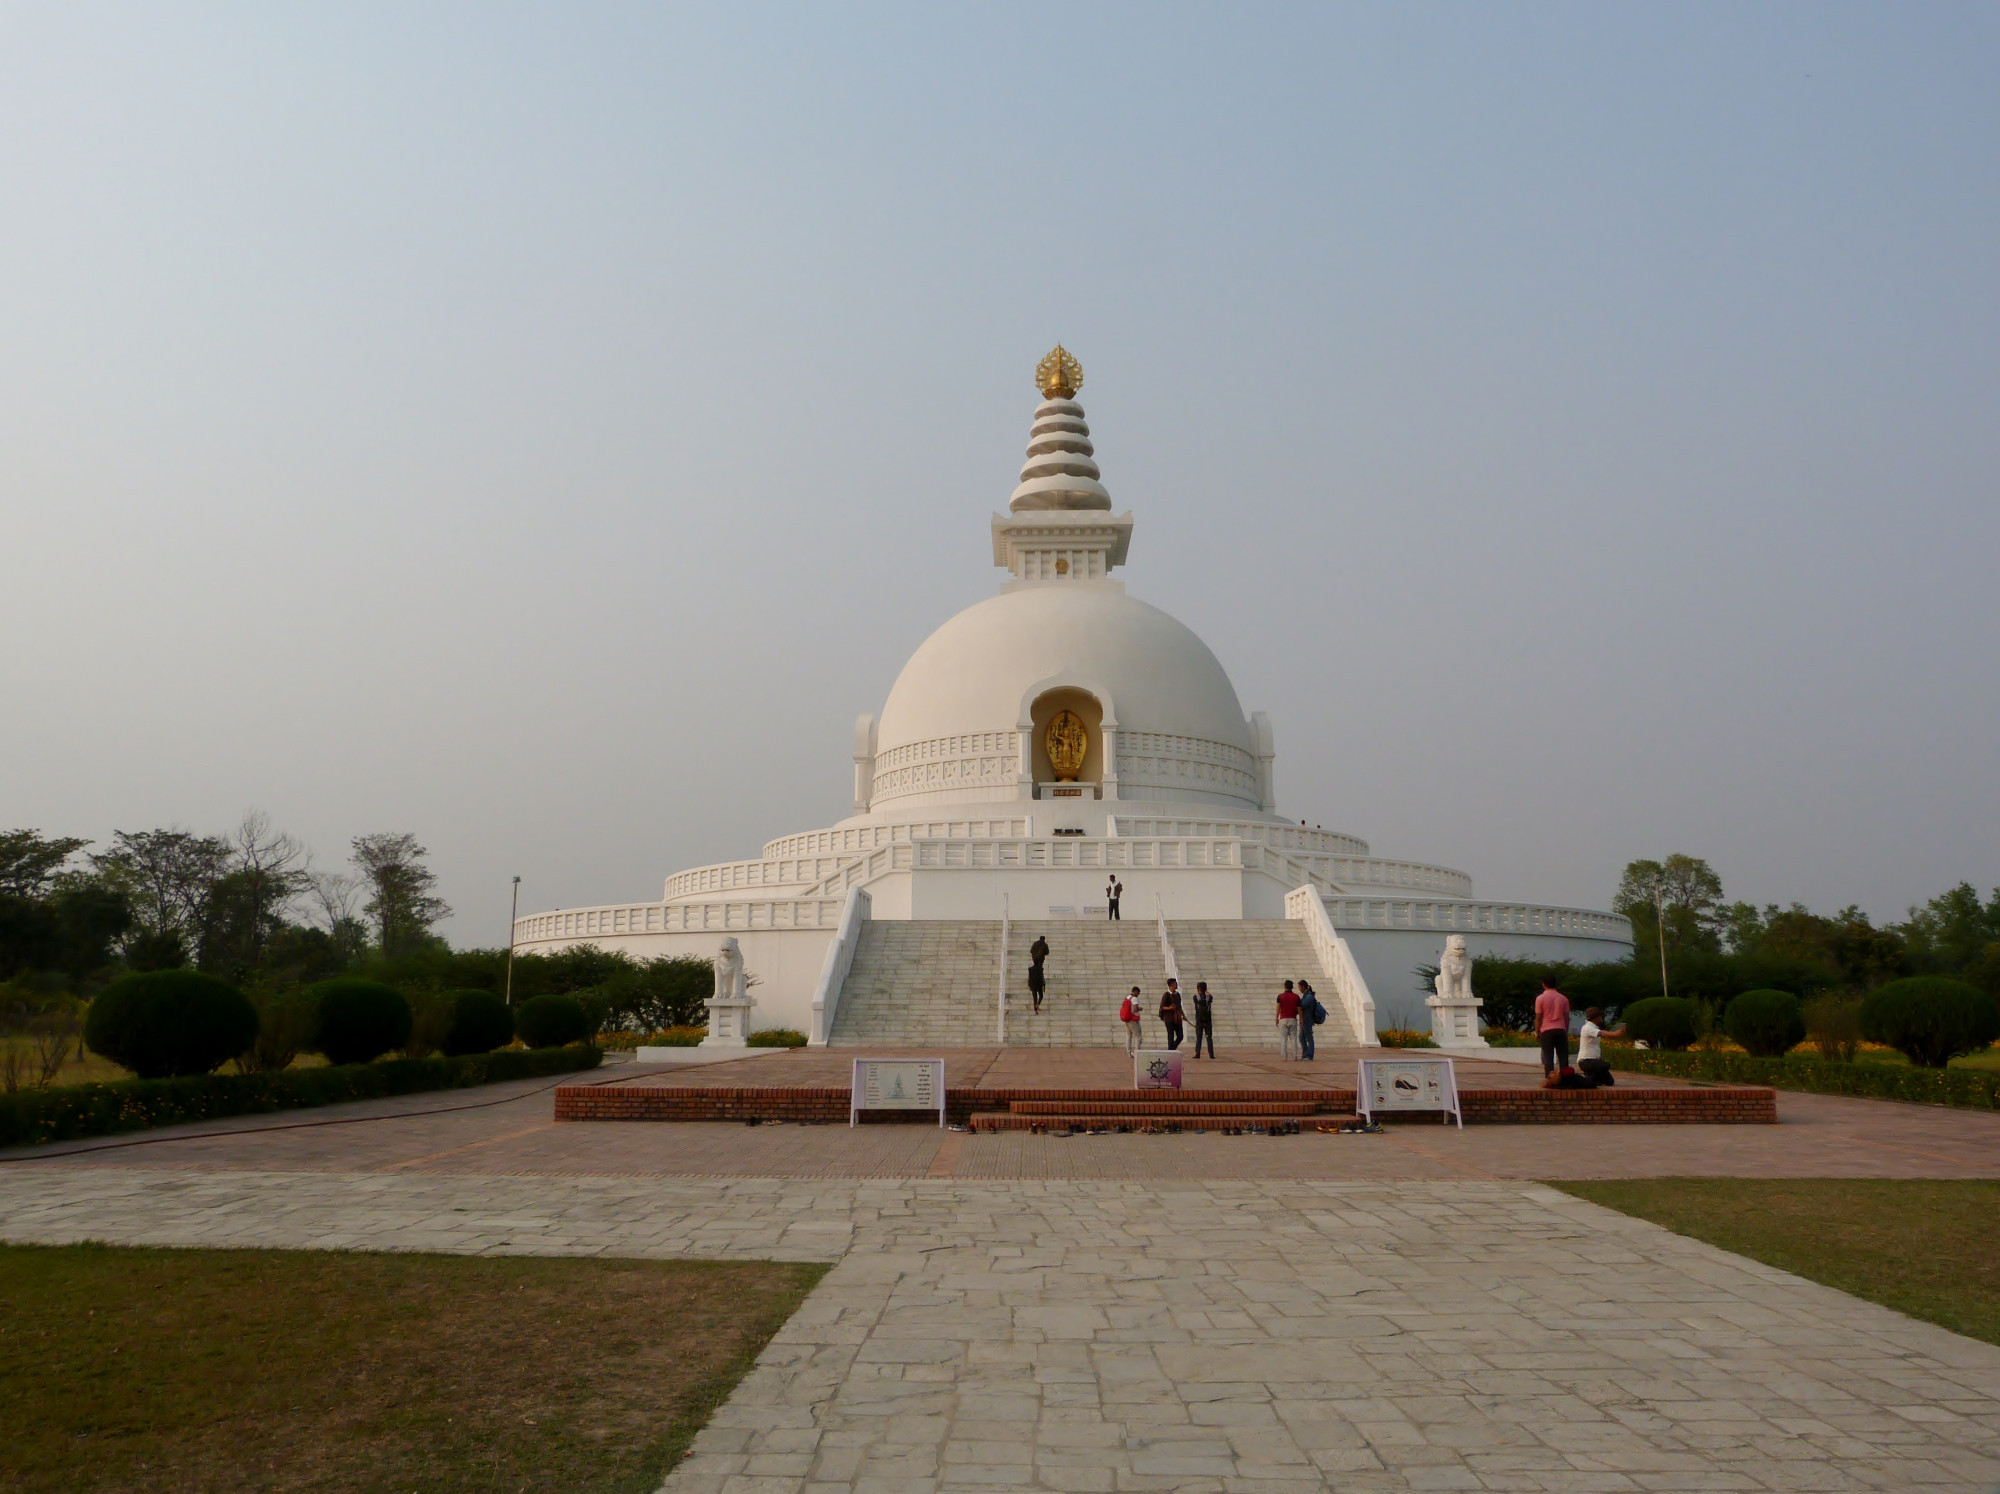 World Peace Pagoda, Непал